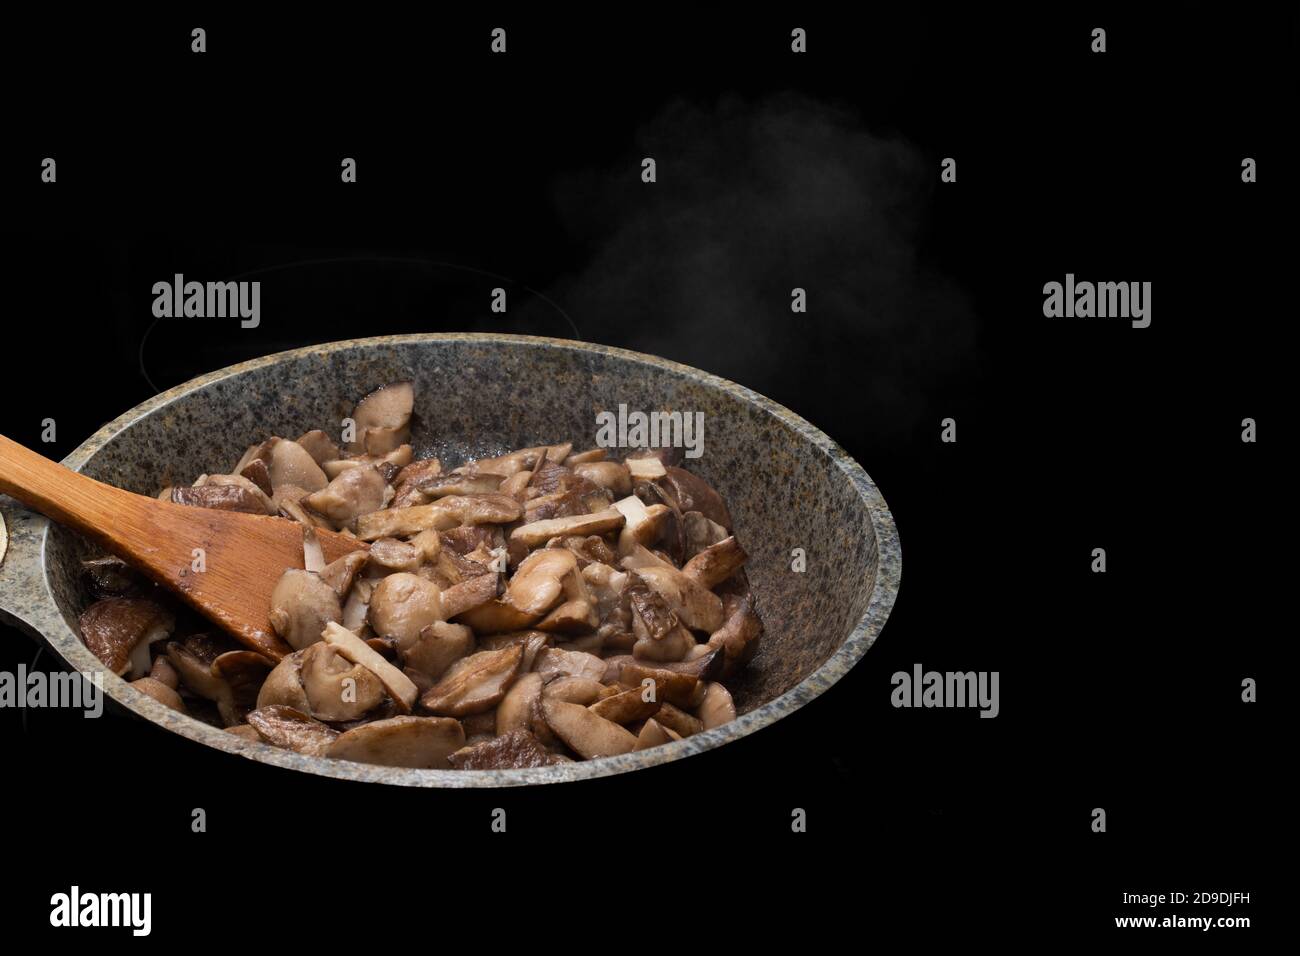 Primo piano di un cucchiaio di legno e funghi fritti o stufati in una padella, il vapore sale dai funghi caldi Foto Stock